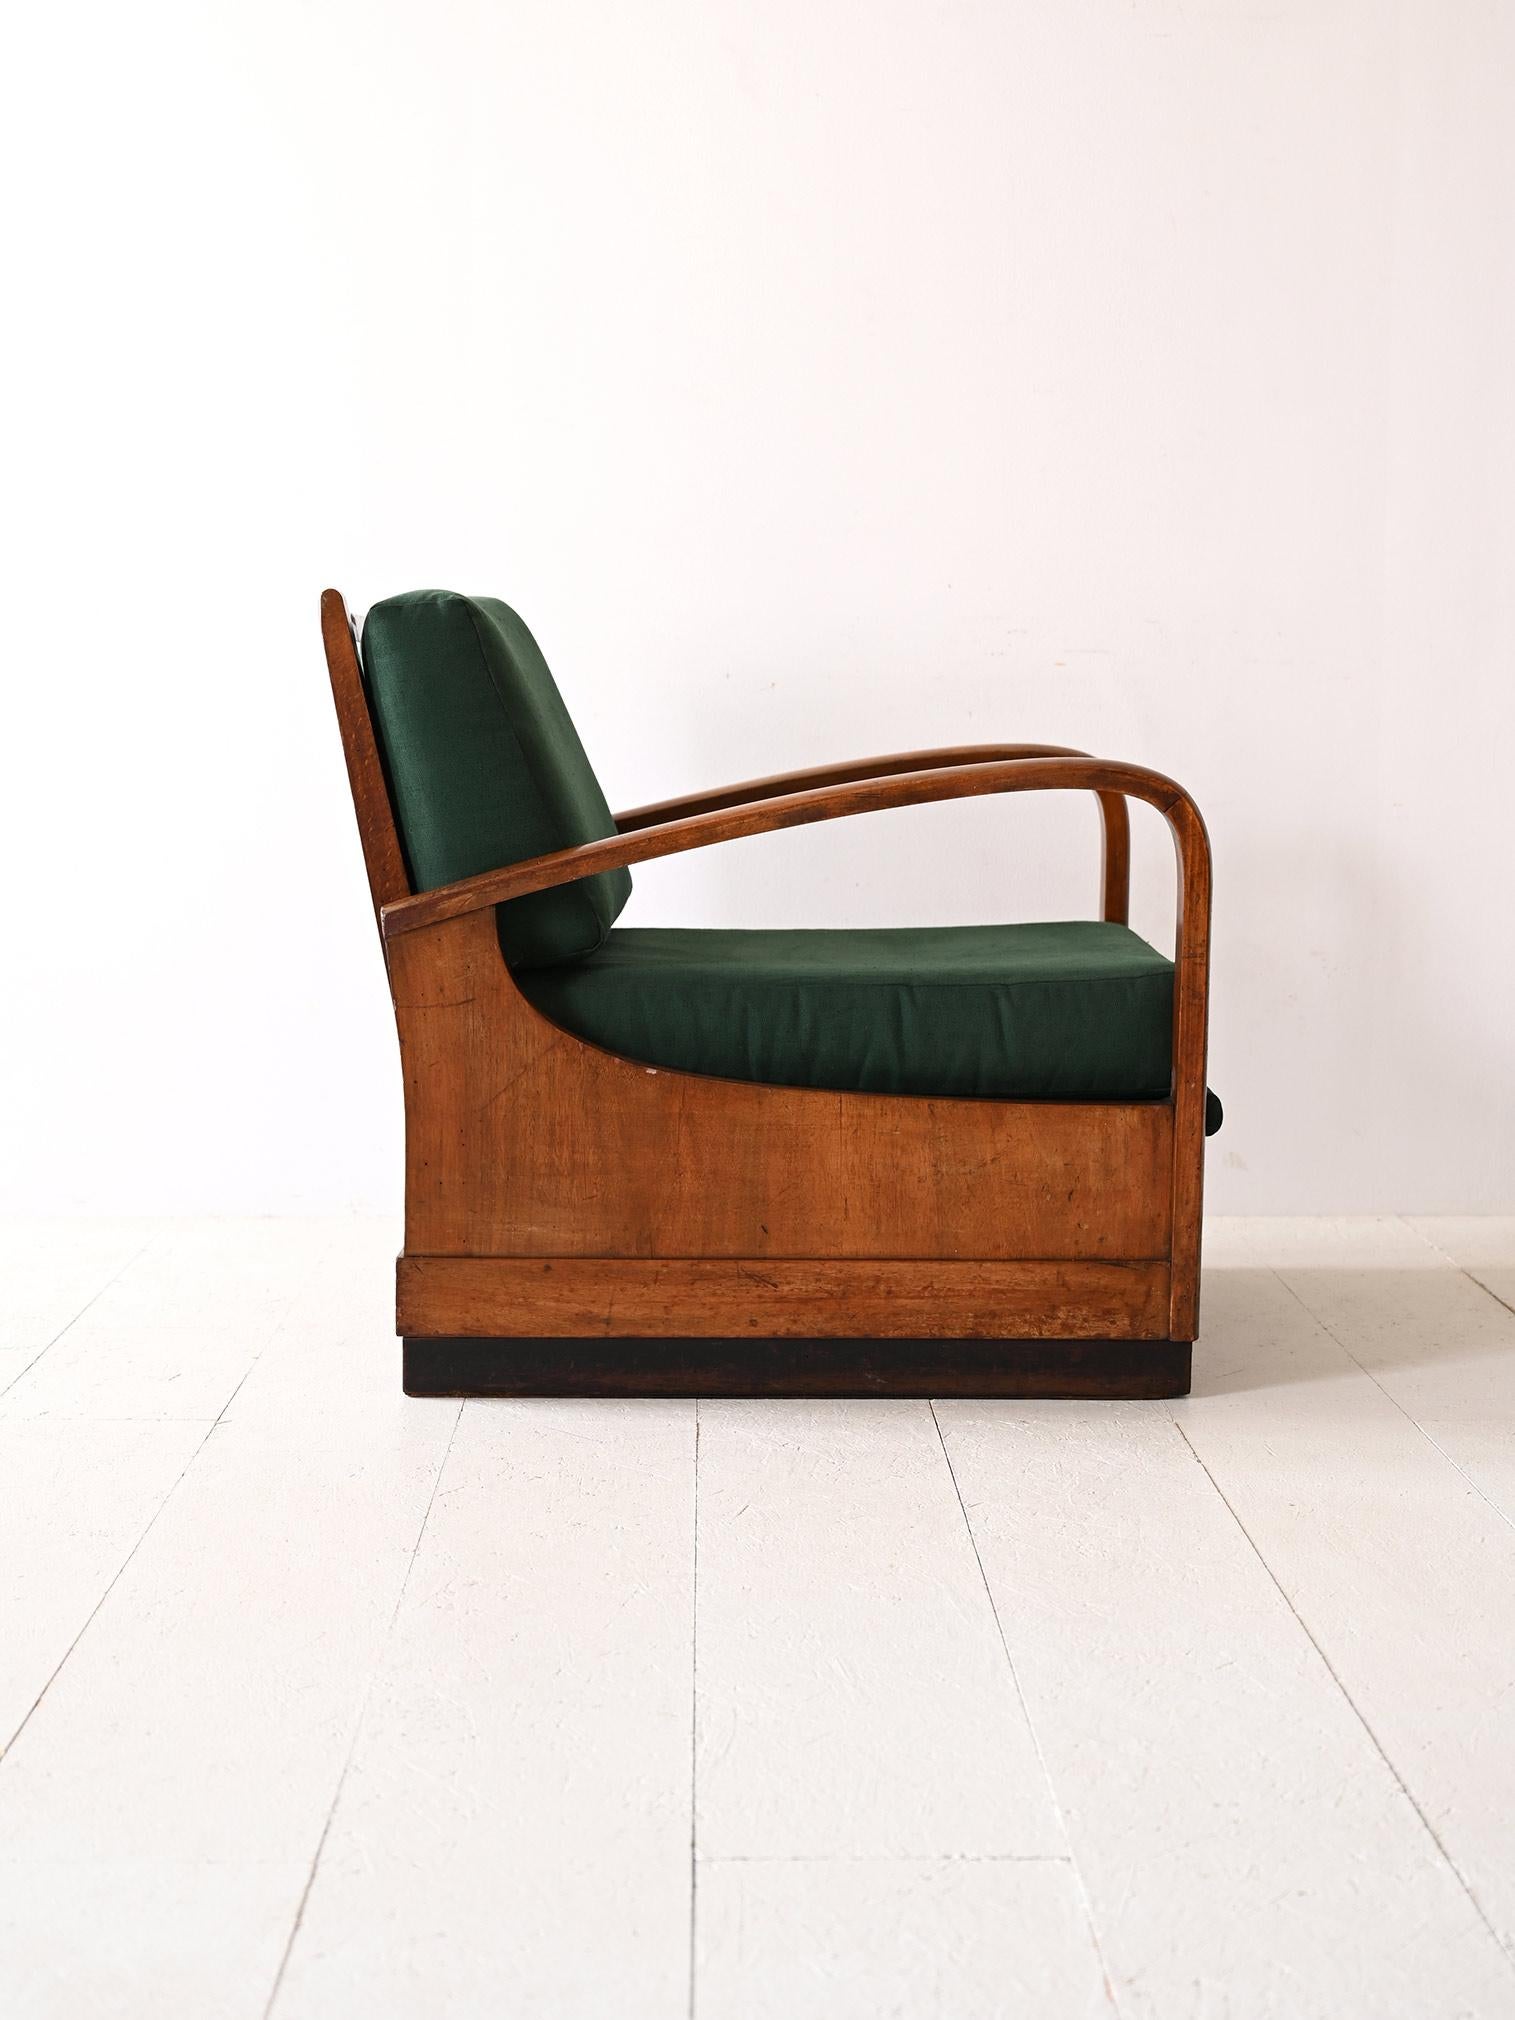 Der Art-Déco-Sessel aus den 1940er Jahren verkörpert eine doppelte Funktionalität: ein bequemer Sitz, der sich in ein Bett verwandeln lässt. Das Holz mit seinen geschwungenen Linien und der patinierten Oberfläche verleiht dem Gebäude einen Hauch von